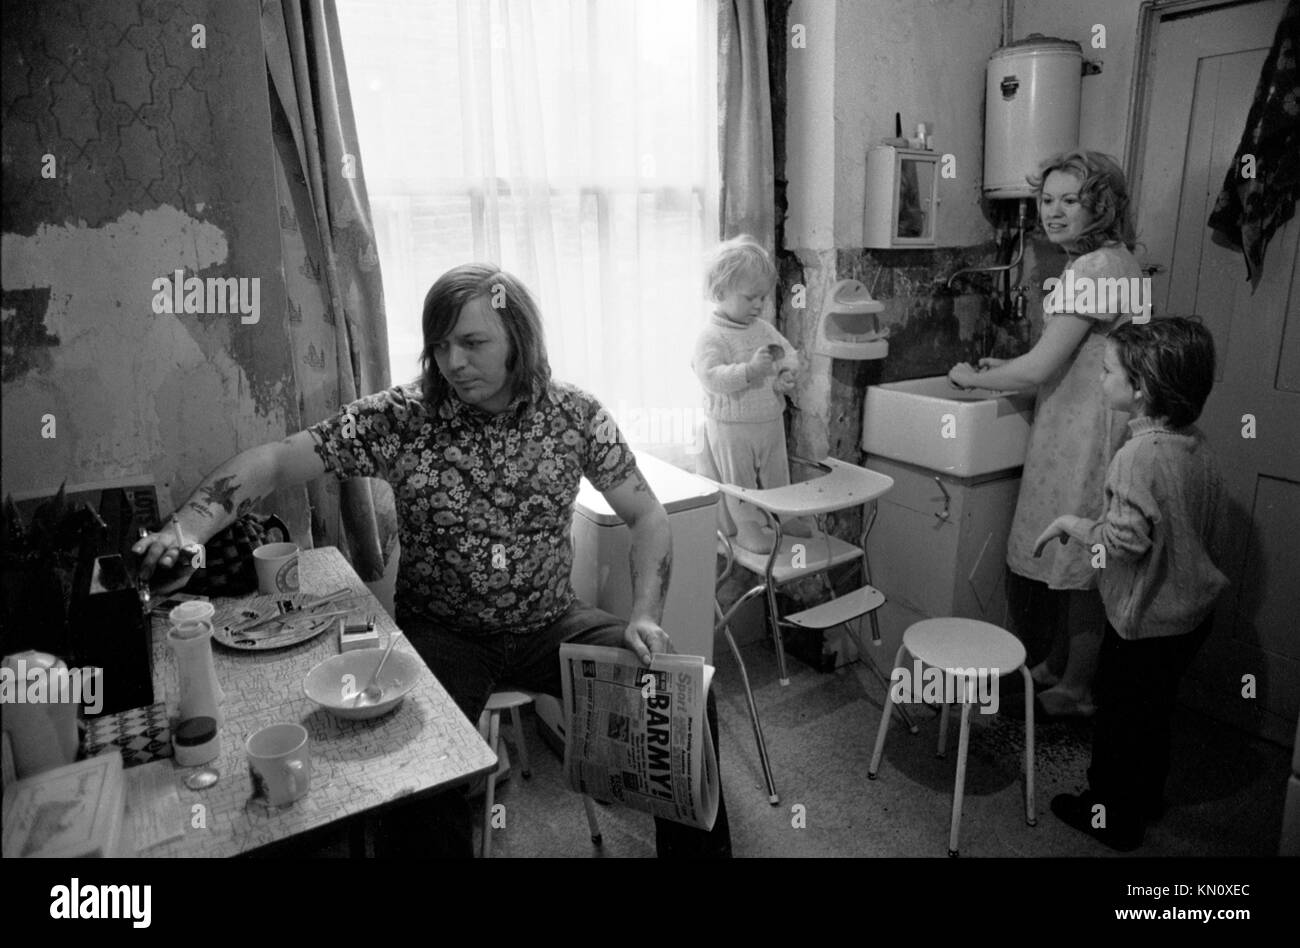 1970s Slum Housing, cucina doppia come bagno. Famiglia che mangia insieme. Povertà. Scaldabagno a gas Ascot sulla parete sopra il lavandino del maggiordomo 1972 Fulham, Inghilterra anni '70 UK HOMER SYKES Foto Stock